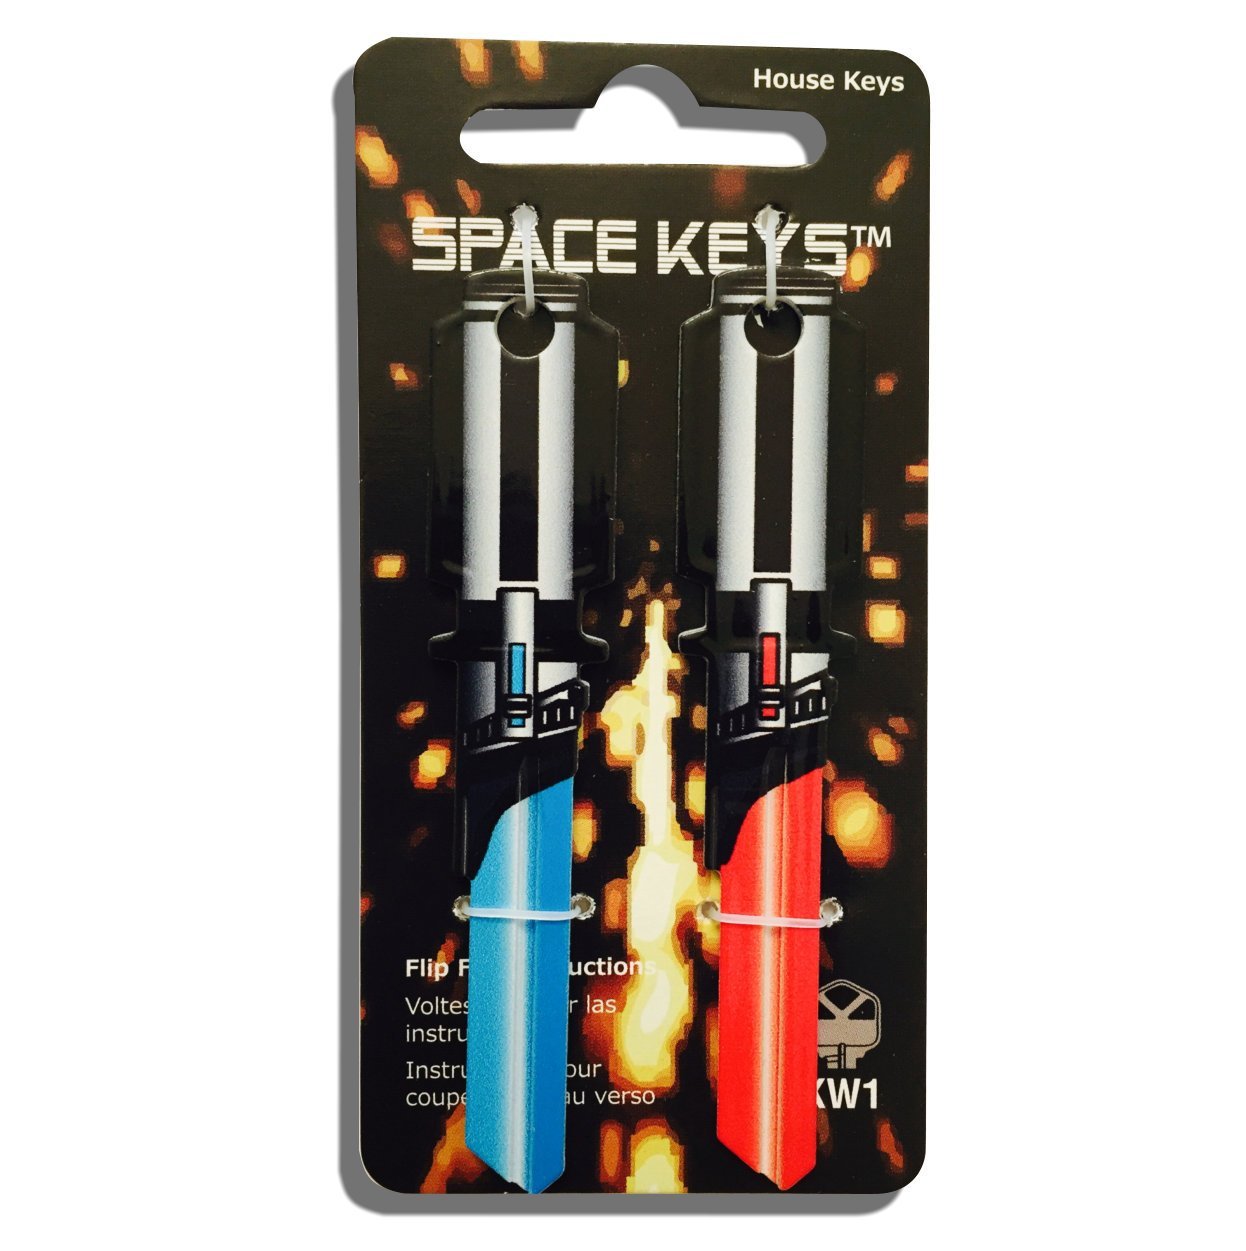 Lightsaber Keys in packaging